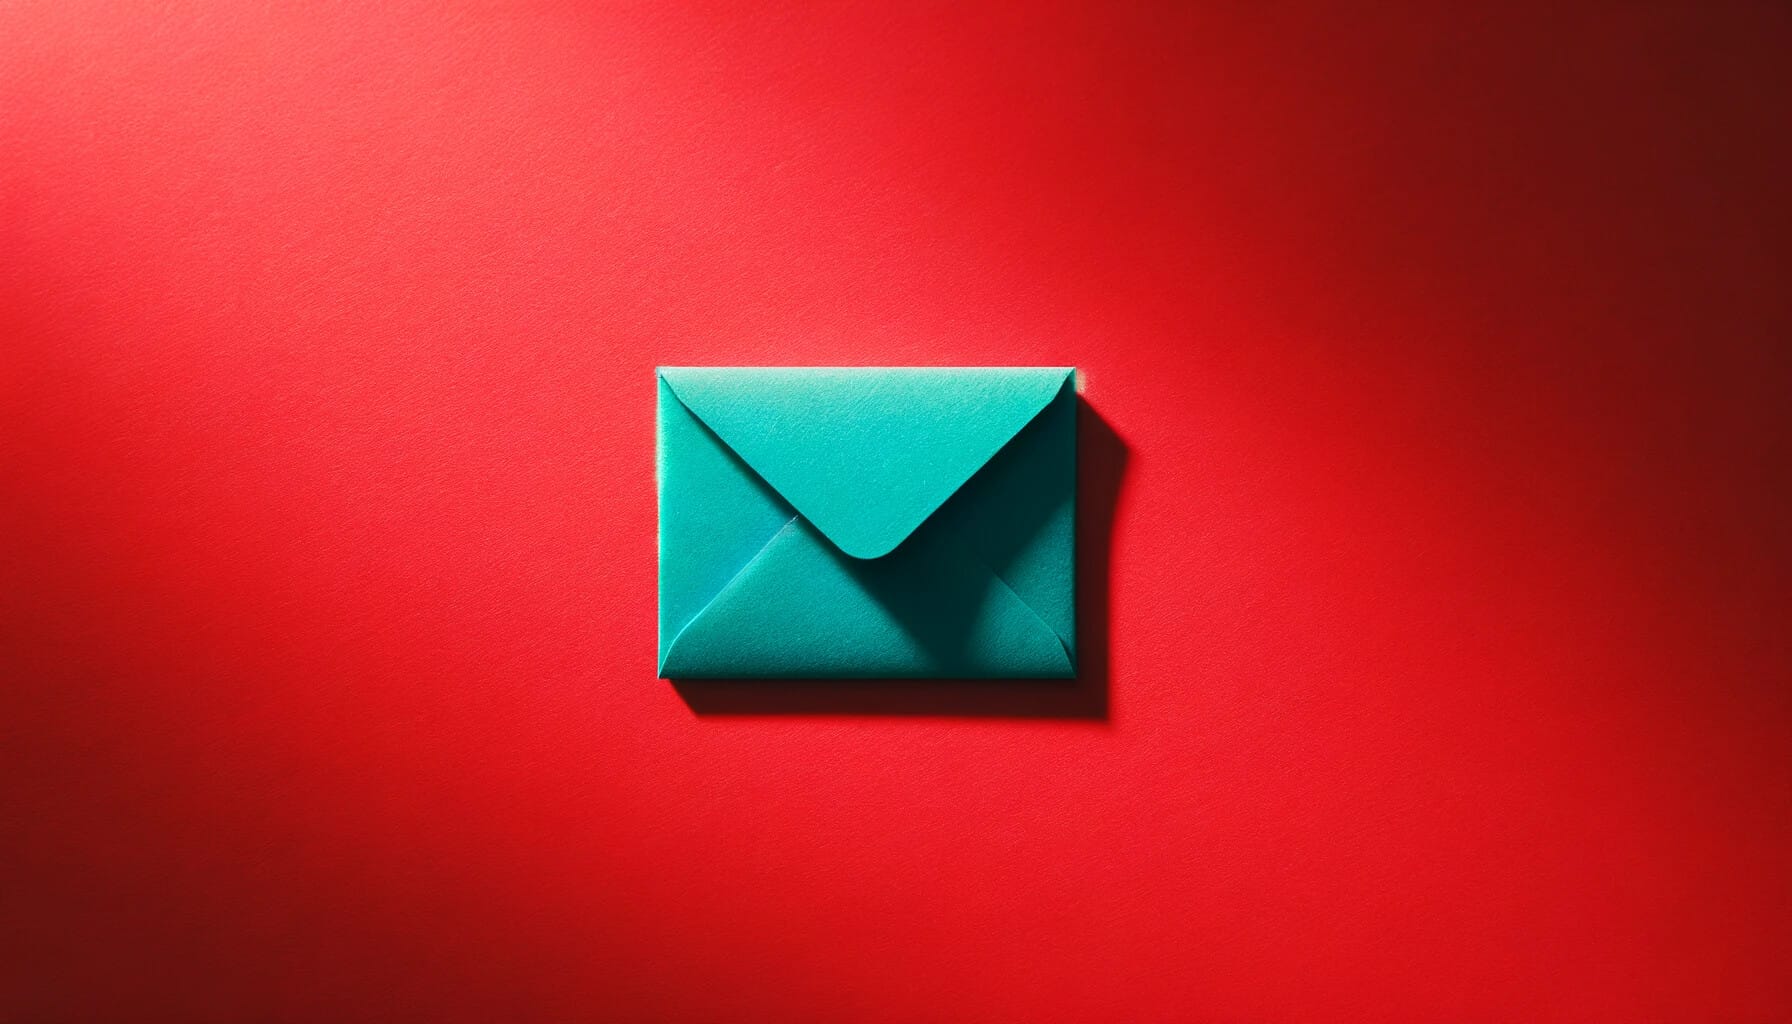 Teal envelope on red background.